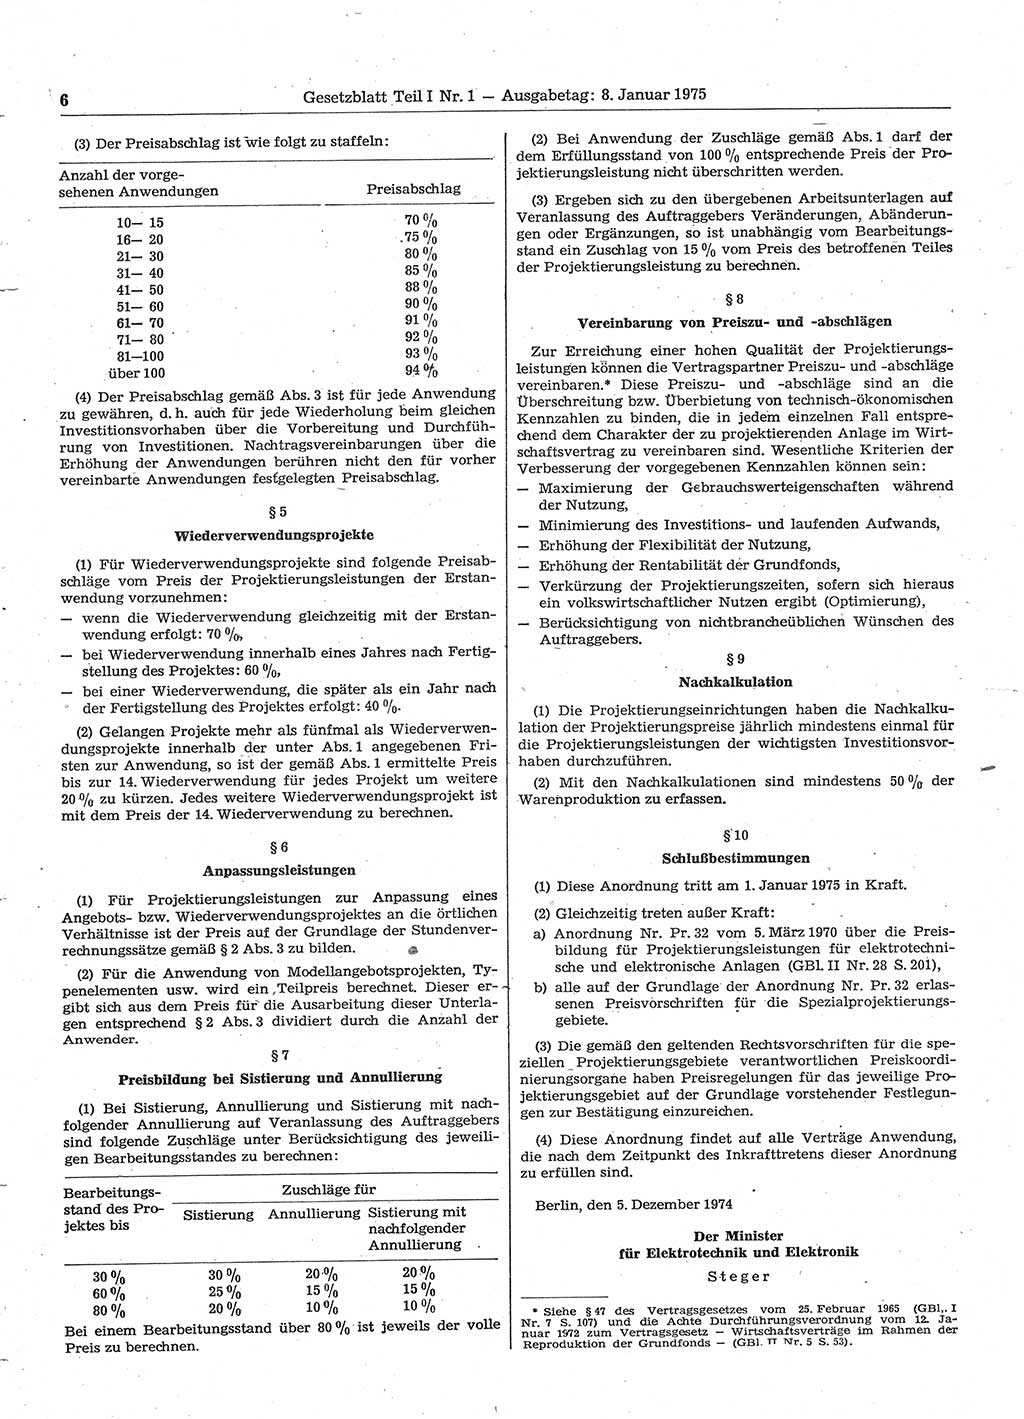 Gesetzblatt (GBl.) der Deutschen Demokratischen Republik (DDR) Teil Ⅰ 1975, Seite 6 (GBl. DDR Ⅰ 1975, S. 6)